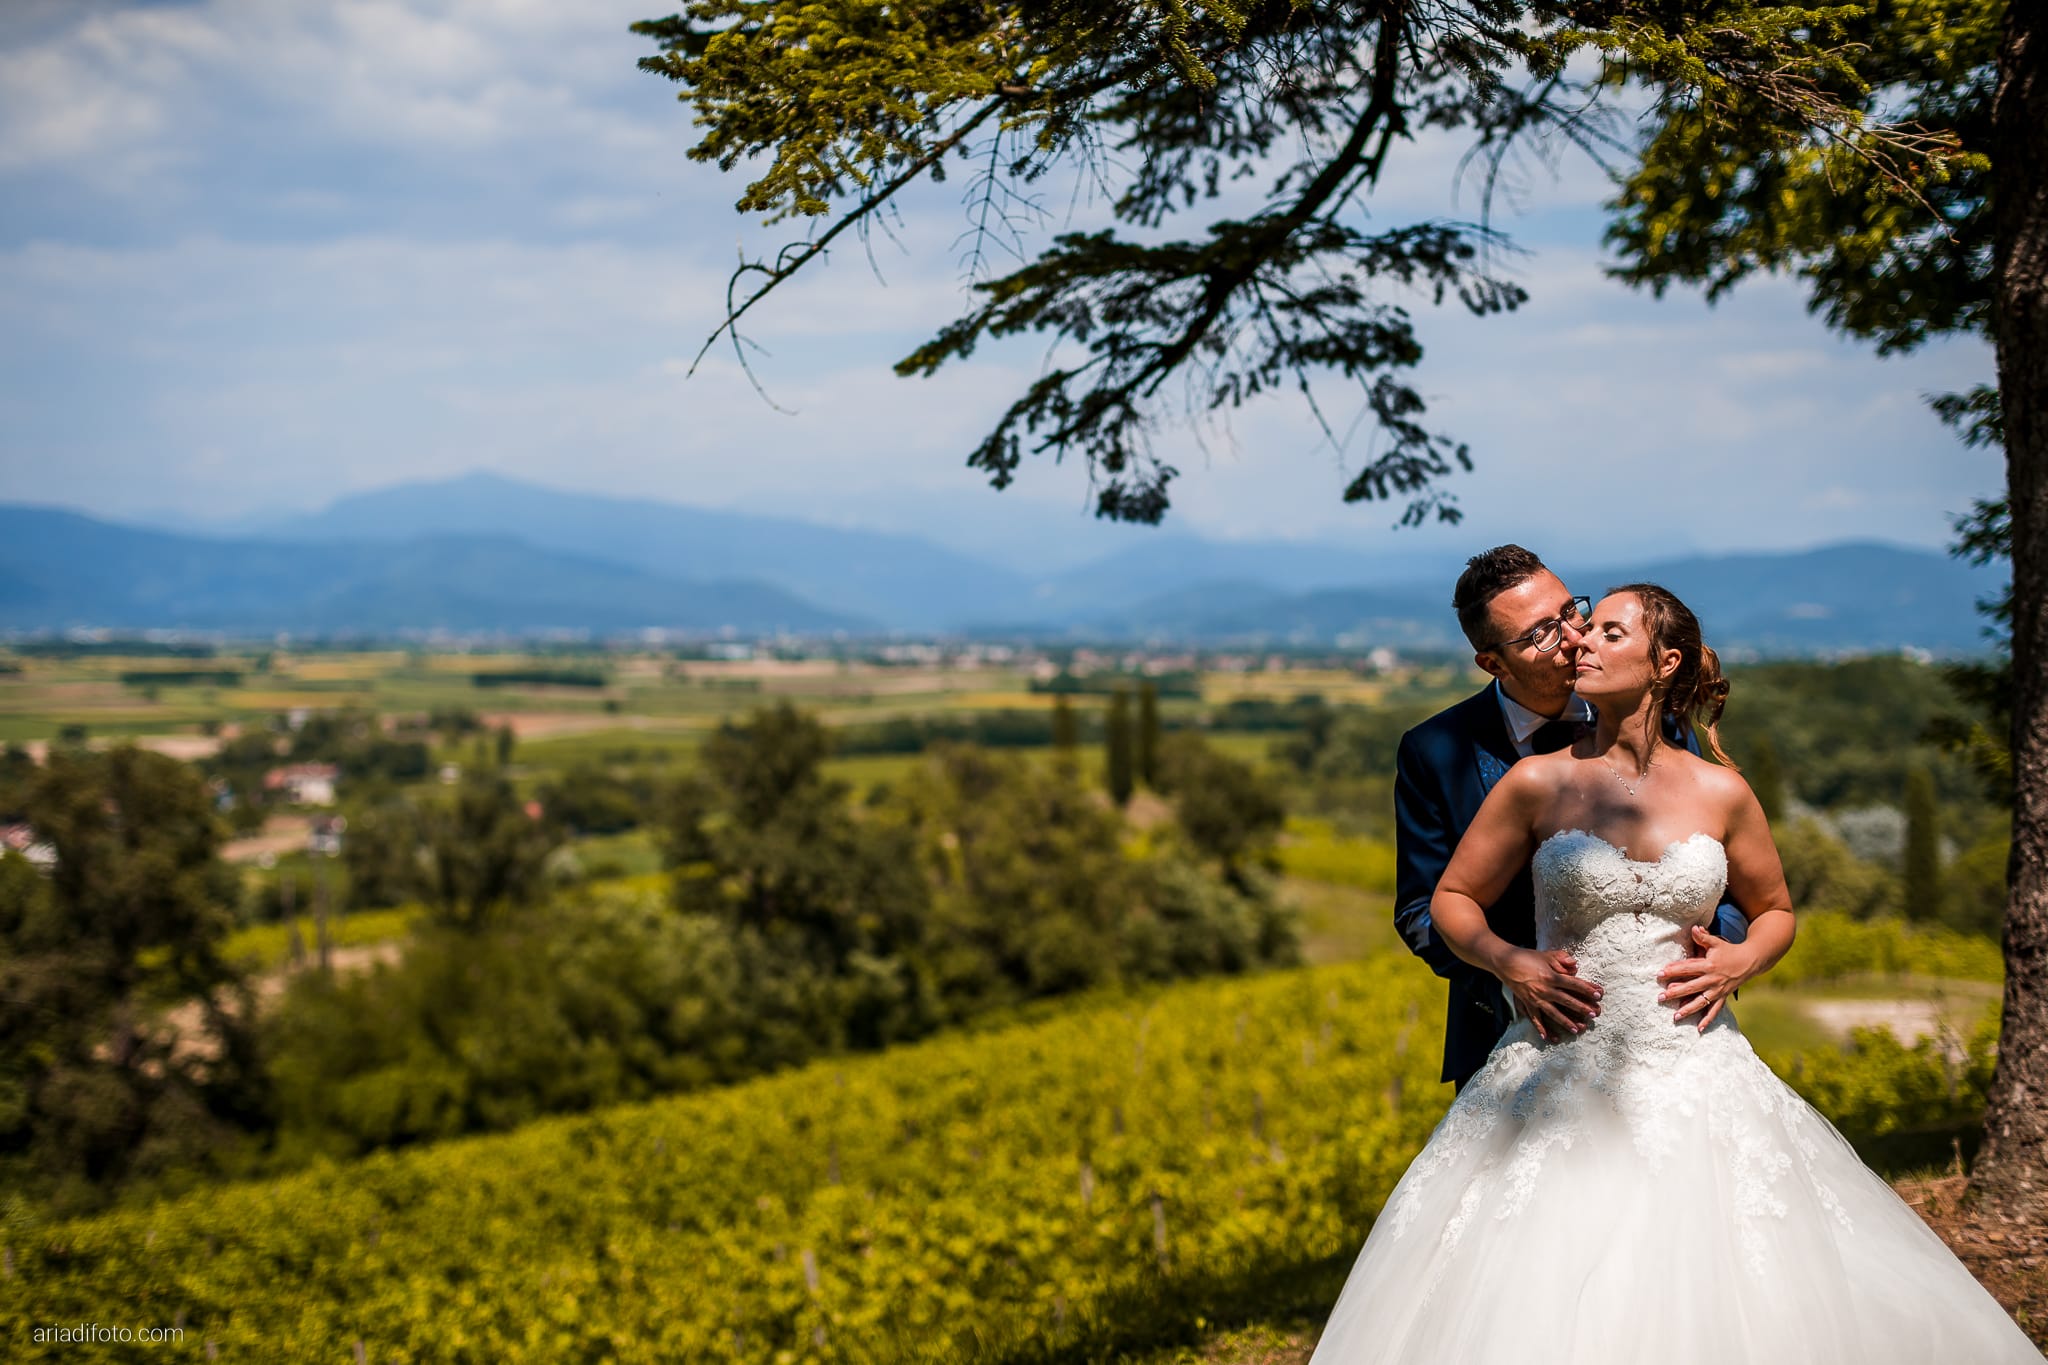 Anna Matteo Matrimonio Parco di Buttrio Udine ritratti sposi